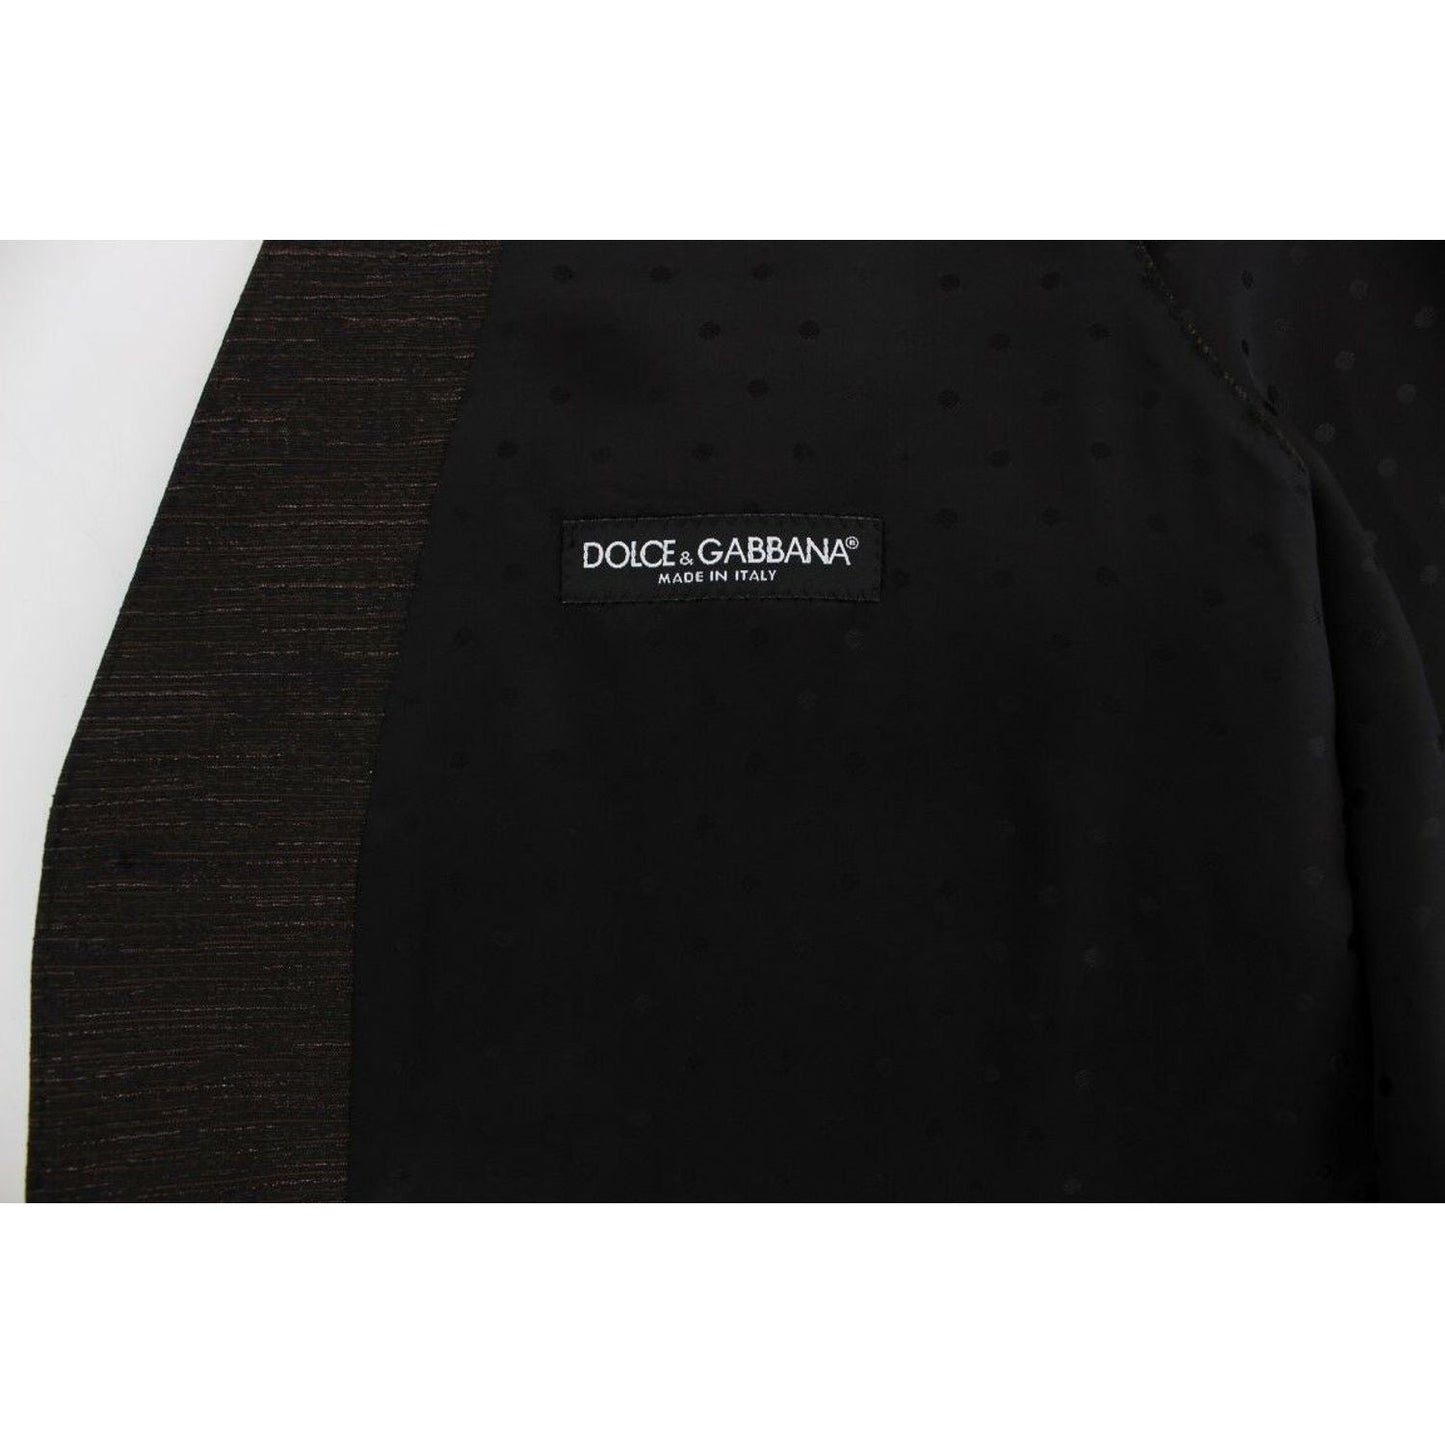 Dolce & Gabbana Elegant Brown Black Wool Blend Dress Vest black-wool-logo-dress-gilet-vest